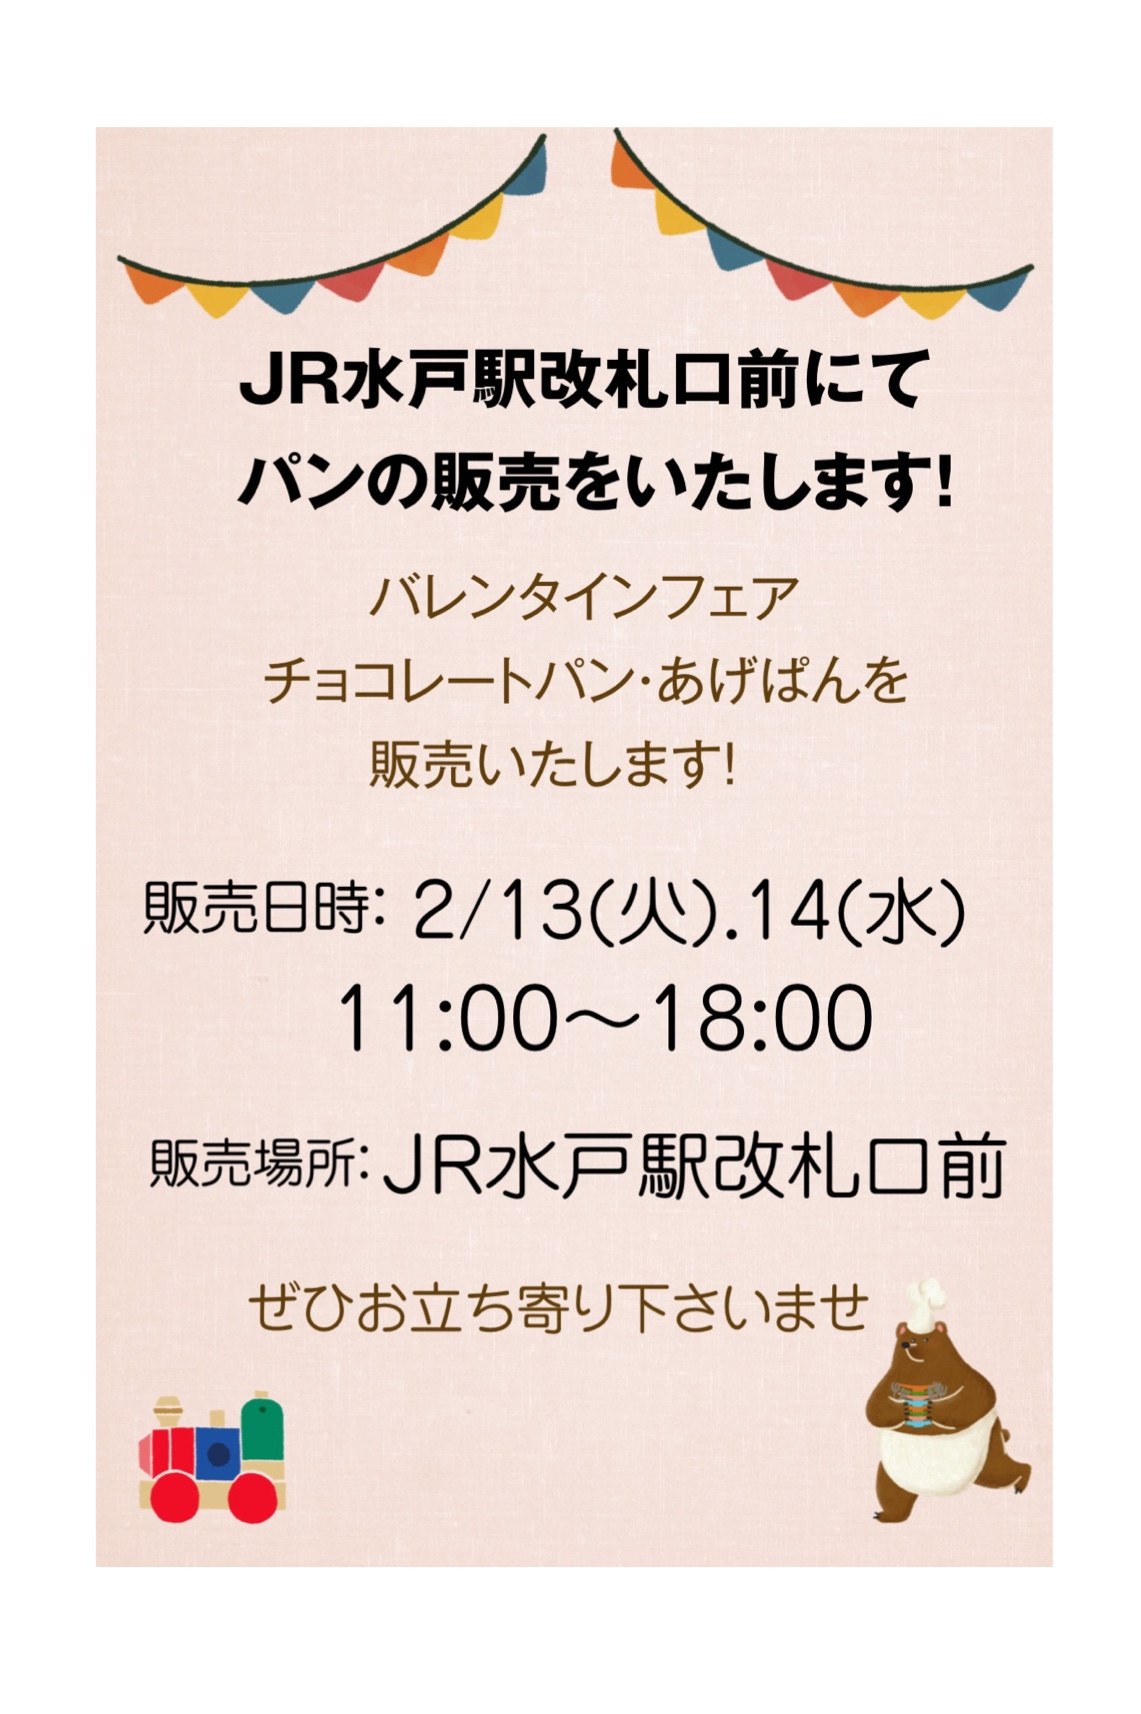 2/13.14 水戸駅改札口前にてパンの販売を行います！